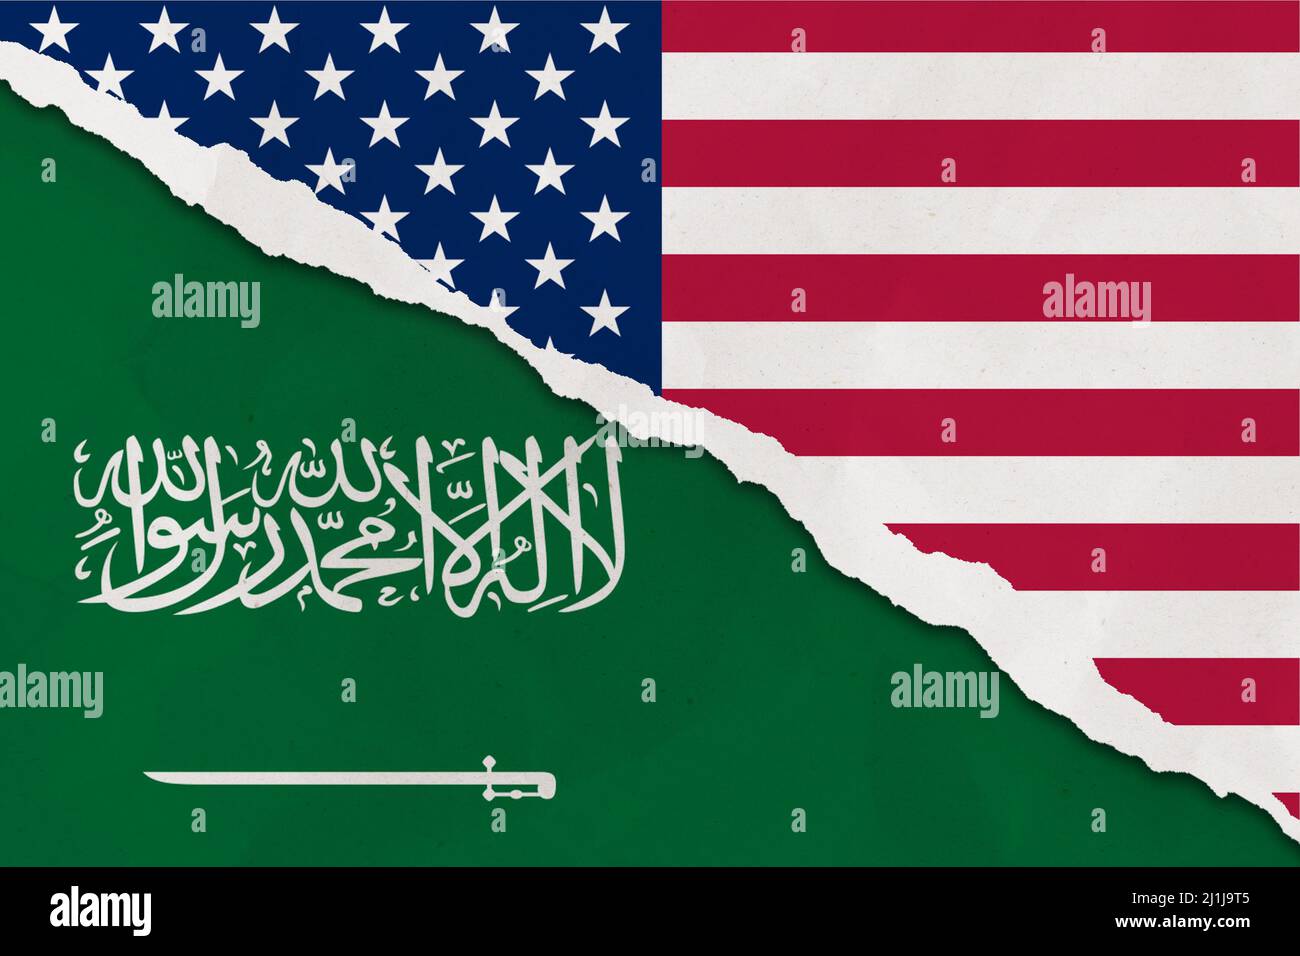 Le drapeau des États-Unis et de l'Arabie Saoudite a déchiré le papier grunge arrière-plan. Résumé économie des États-Unis et de l'Arabie saoudite, conflits politiques, concept de guerre Banque D'Images